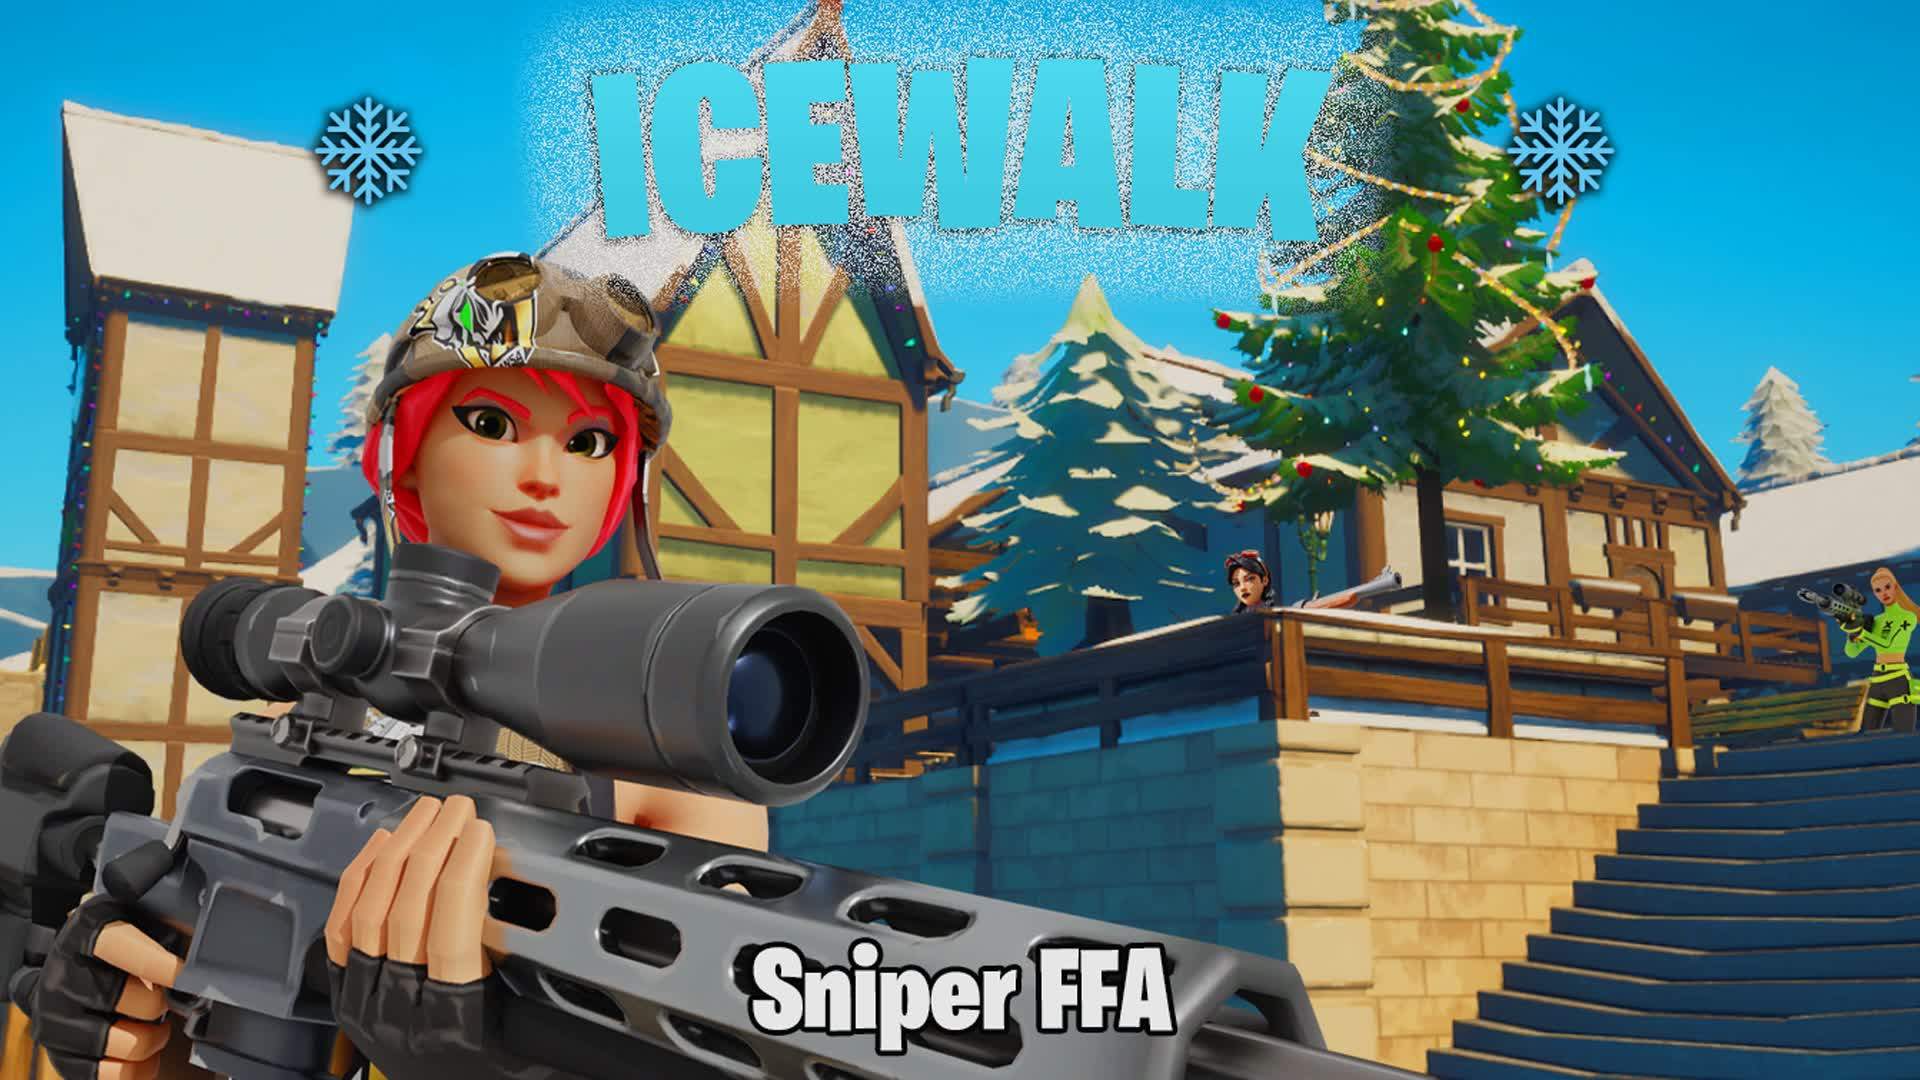 Icewalk- (Sniper FFA)